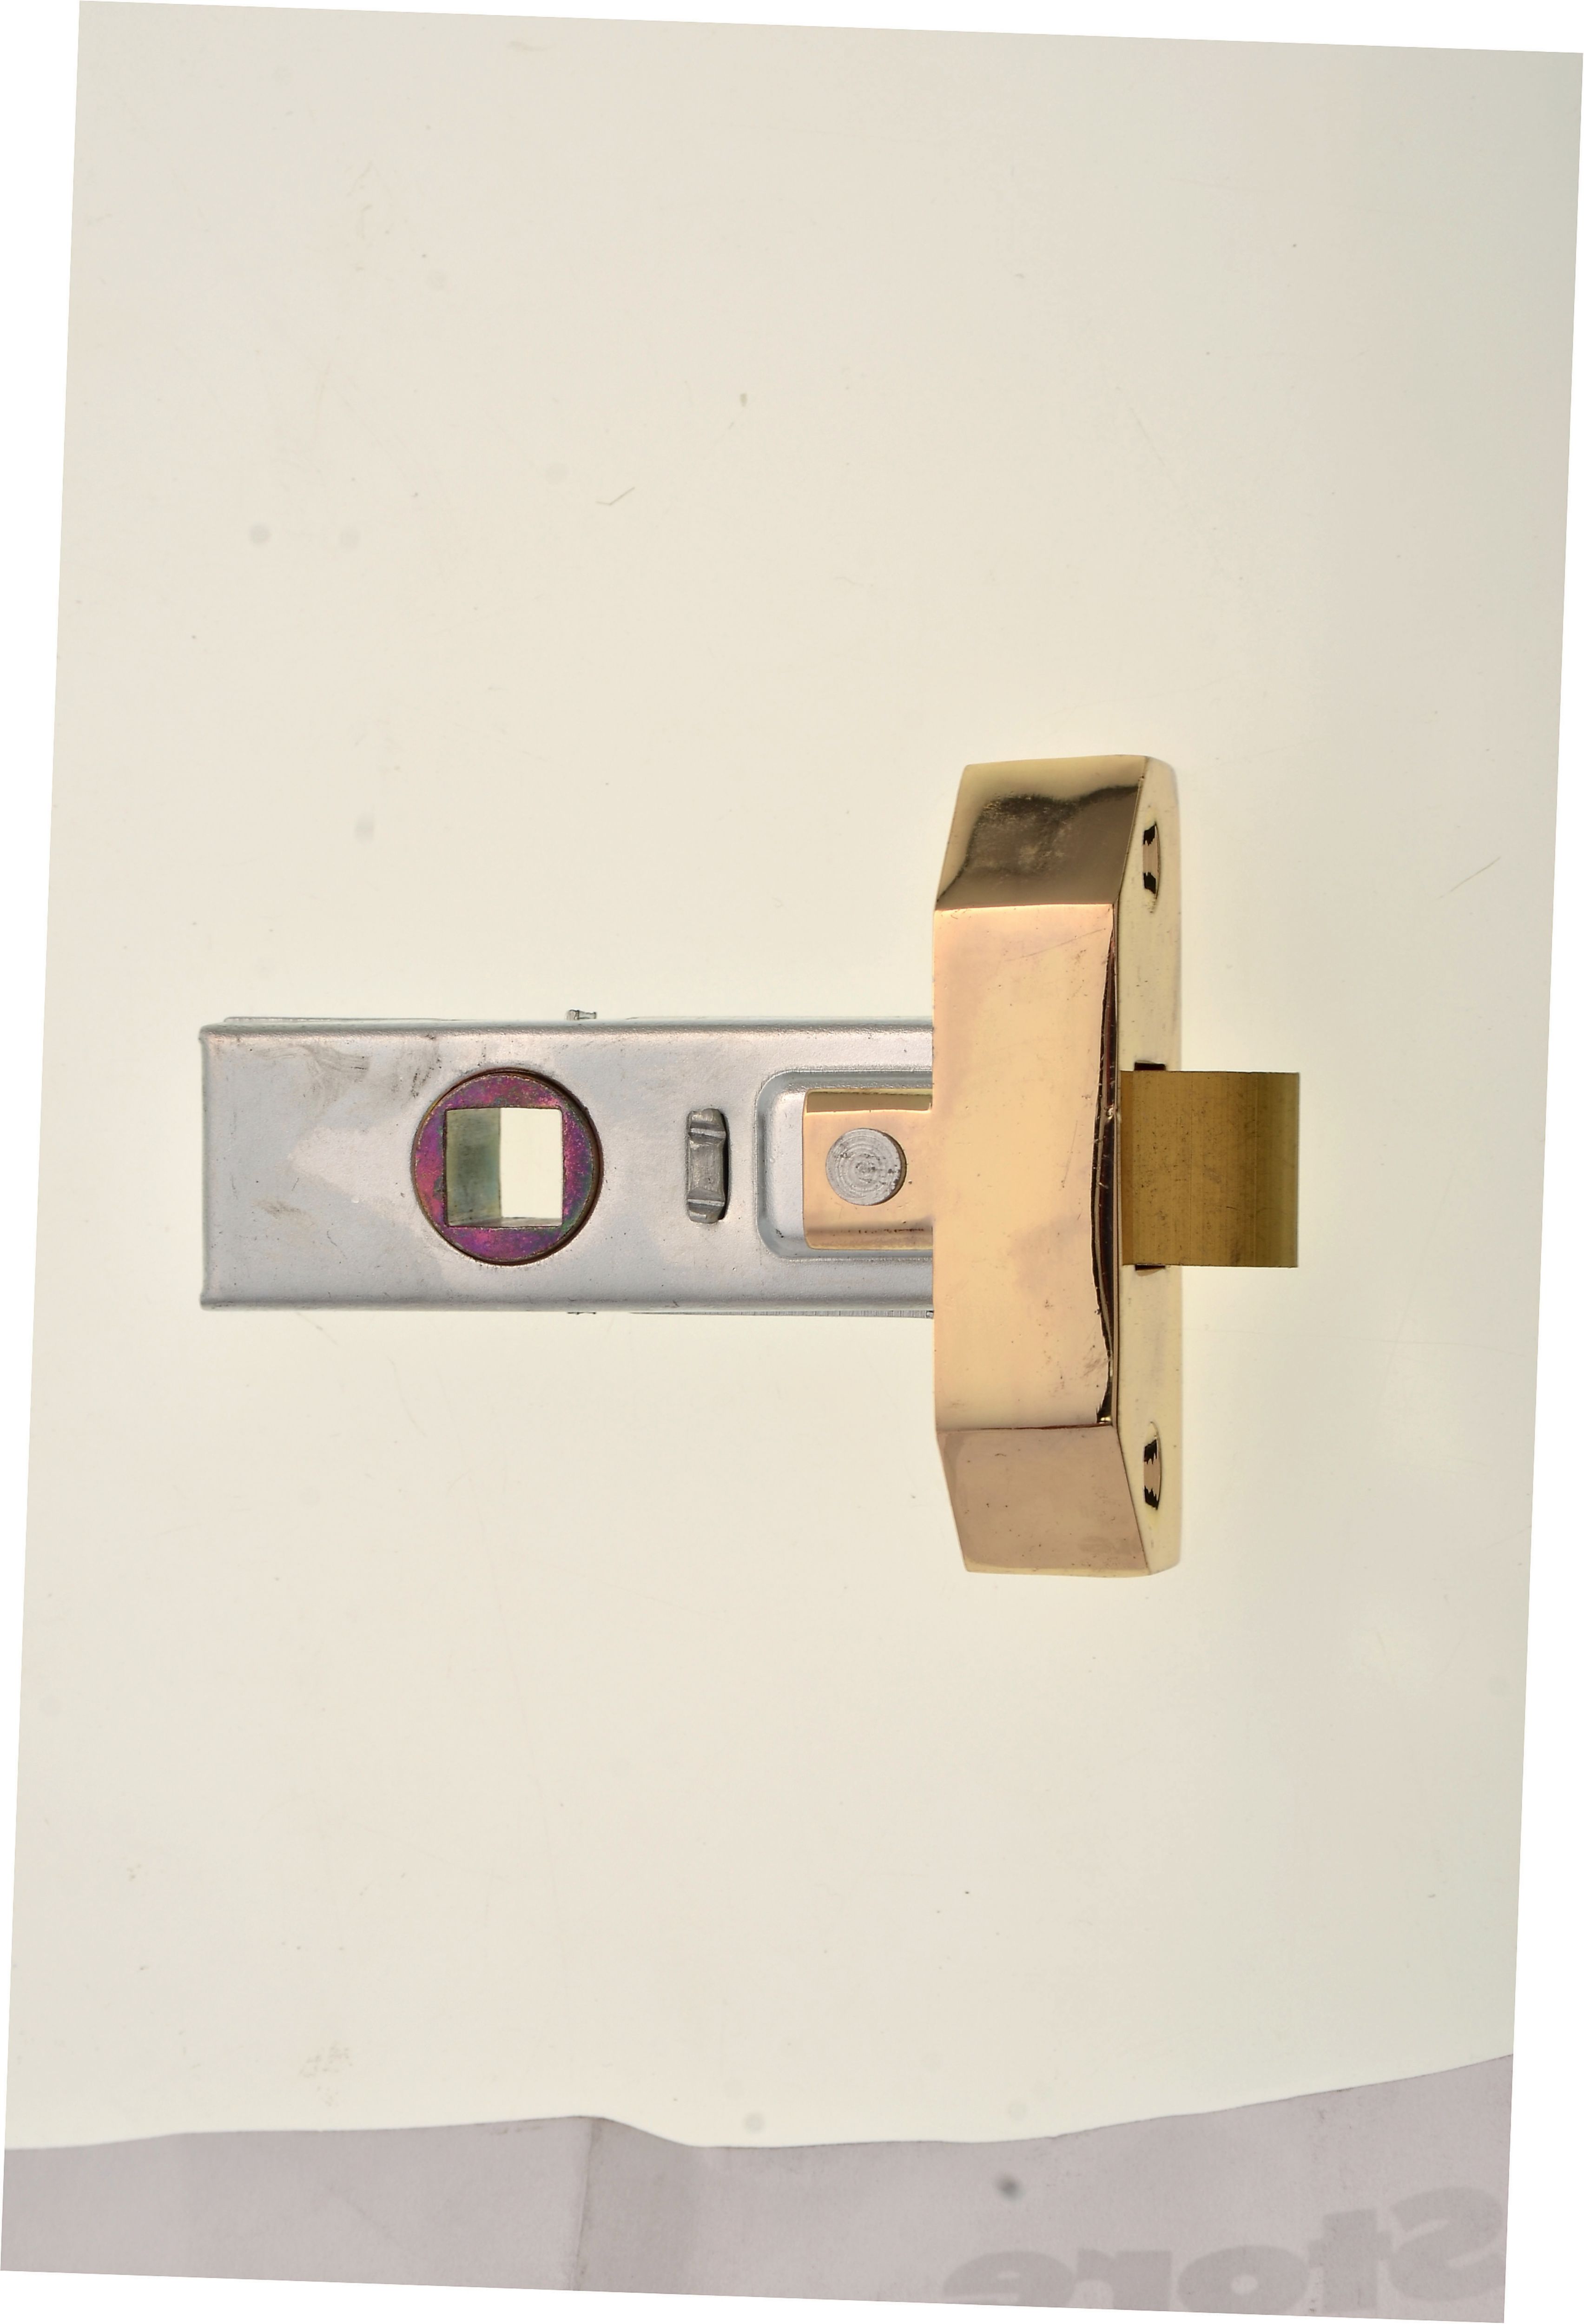 Image of Wickes Rebated Tubular Door Latch - Brass 64mm